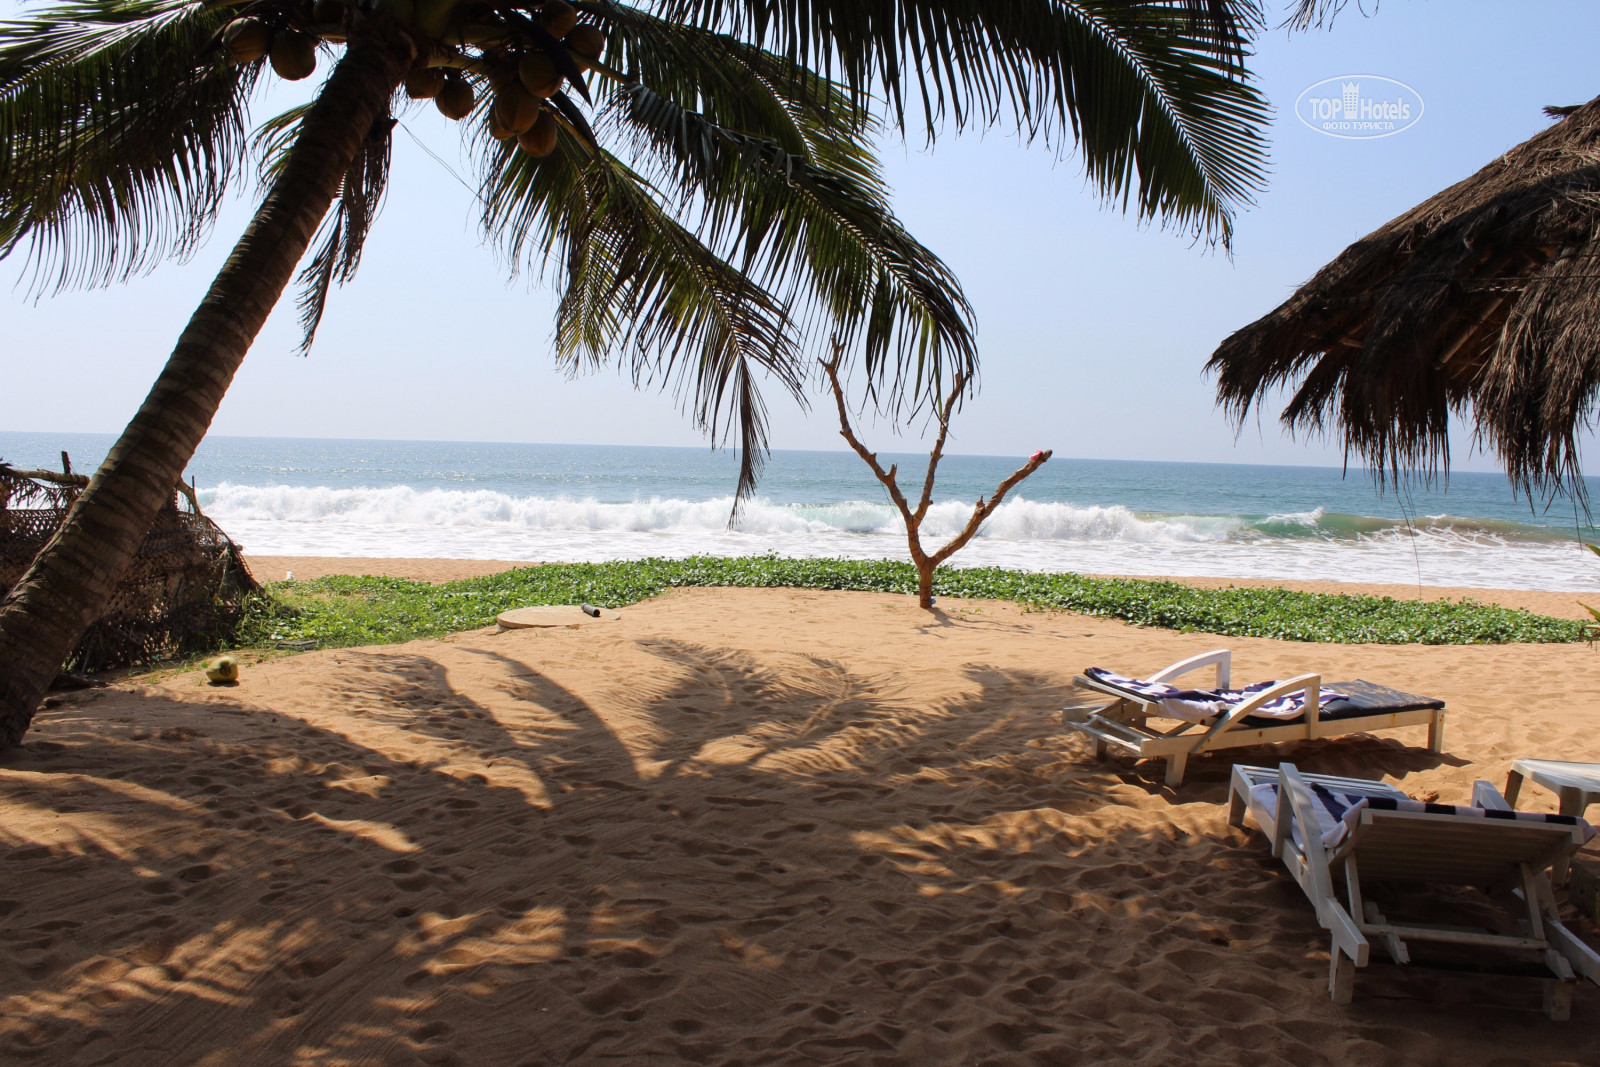 The beach шри ланка. Индурува Шри Ланка. Анакурува Бич Шри Ланка. Пляж Индурува. Коко Роял Бич Шри Ланка.